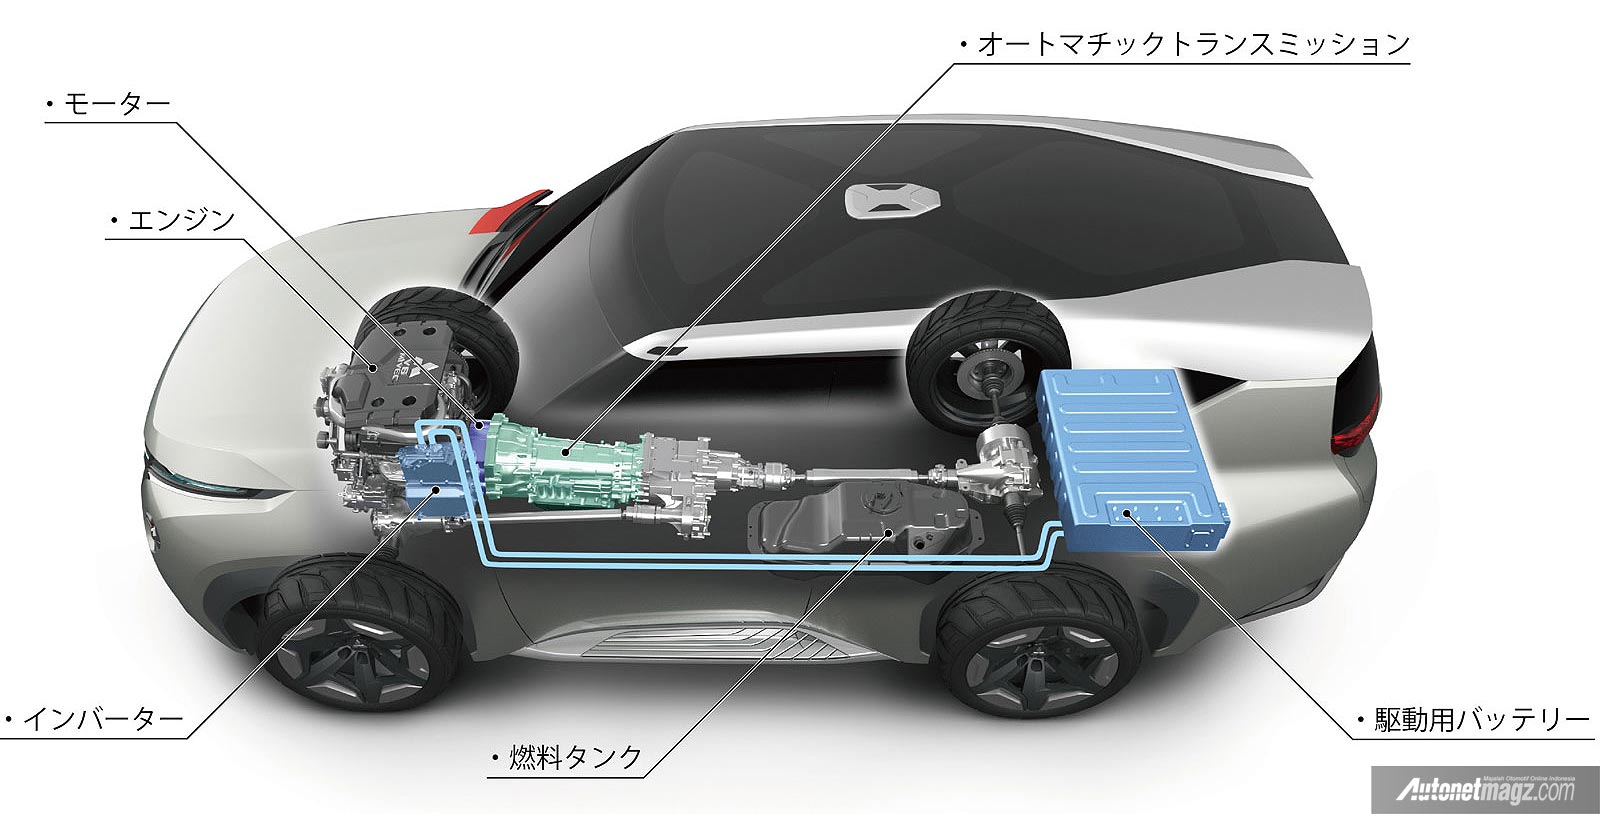 International, Mesin bensin dan hybrid Mitsubishi Concept GC-PHEV: Mitsubishi Concept GC-PHEV Sang Penerus Pajero